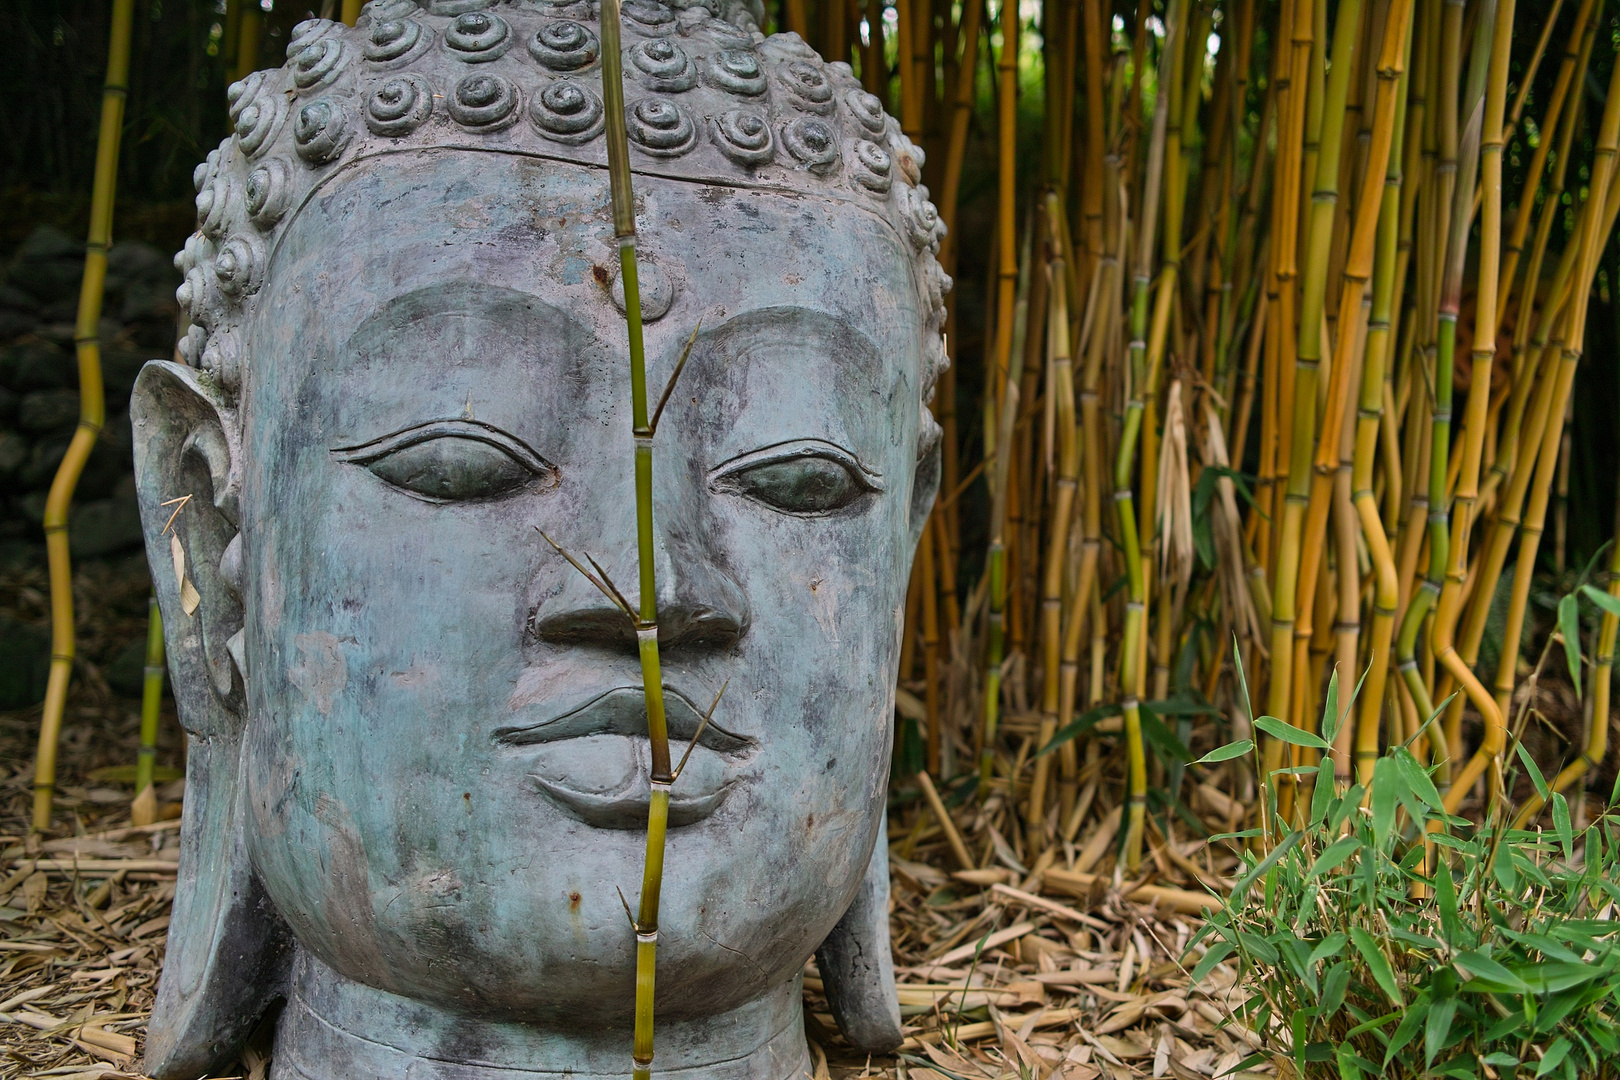 Bamboo Buddha